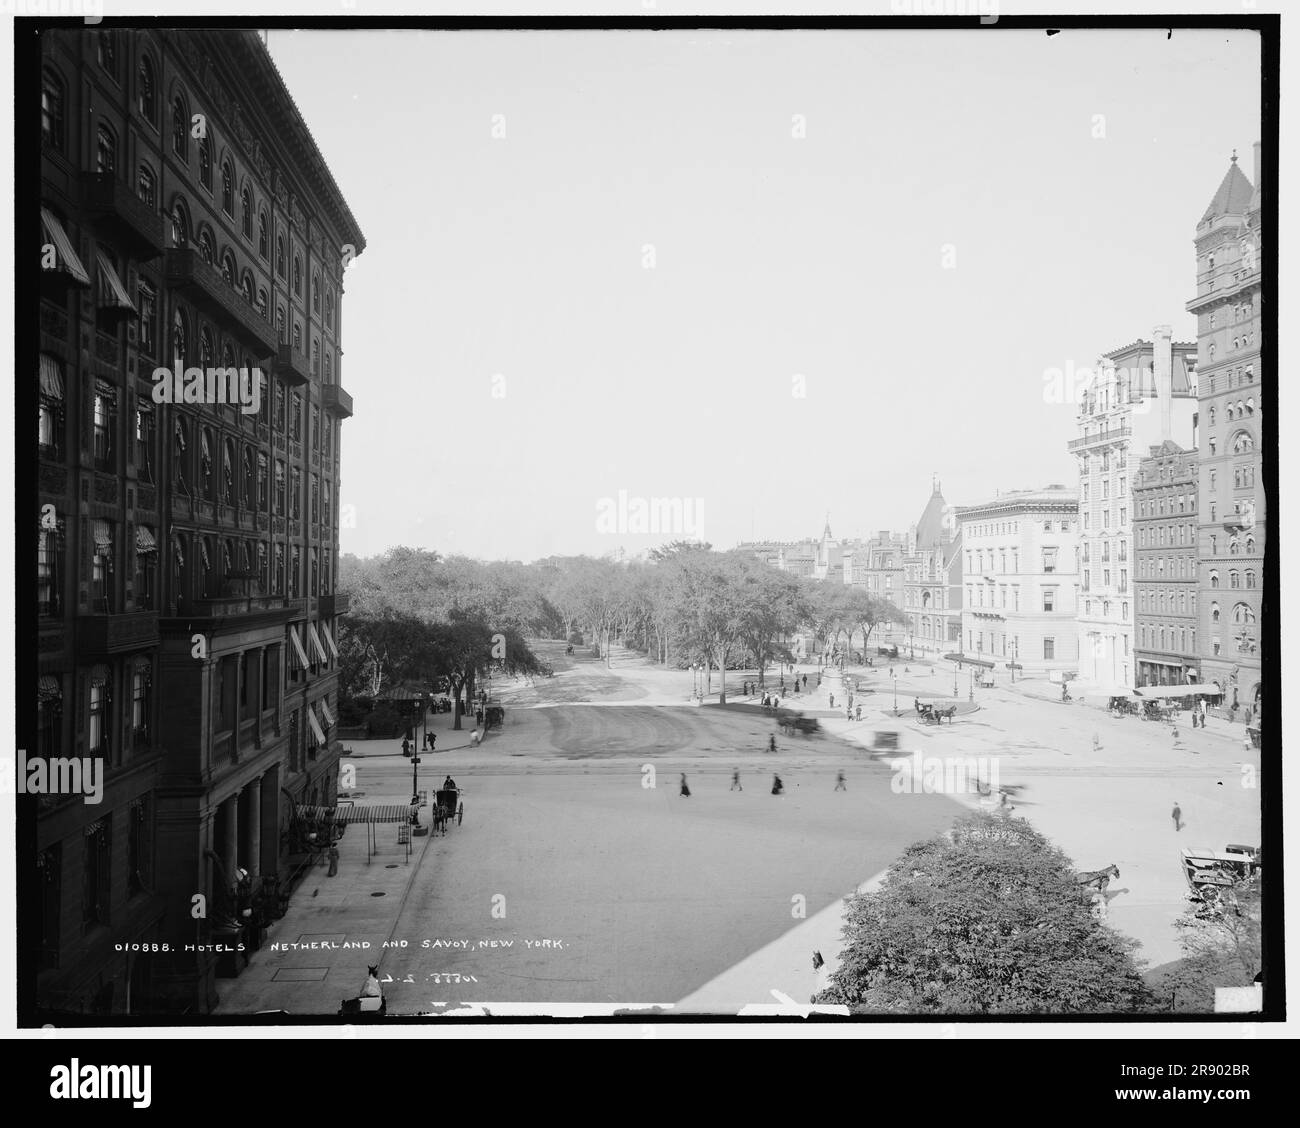 Hôtels pays-Bas et Savoie, New York, c1905. L'hôtel Savoy original de la Cinquième Avenue et de la 59th rue a ouvert ses portes en juin 1892. L'hôtel New Netherland (plus tard l'hôtel Netherland) a été construit en 1892-93 selon un design de William H. Hume pour William Waldorf Astor. Banque D'Images